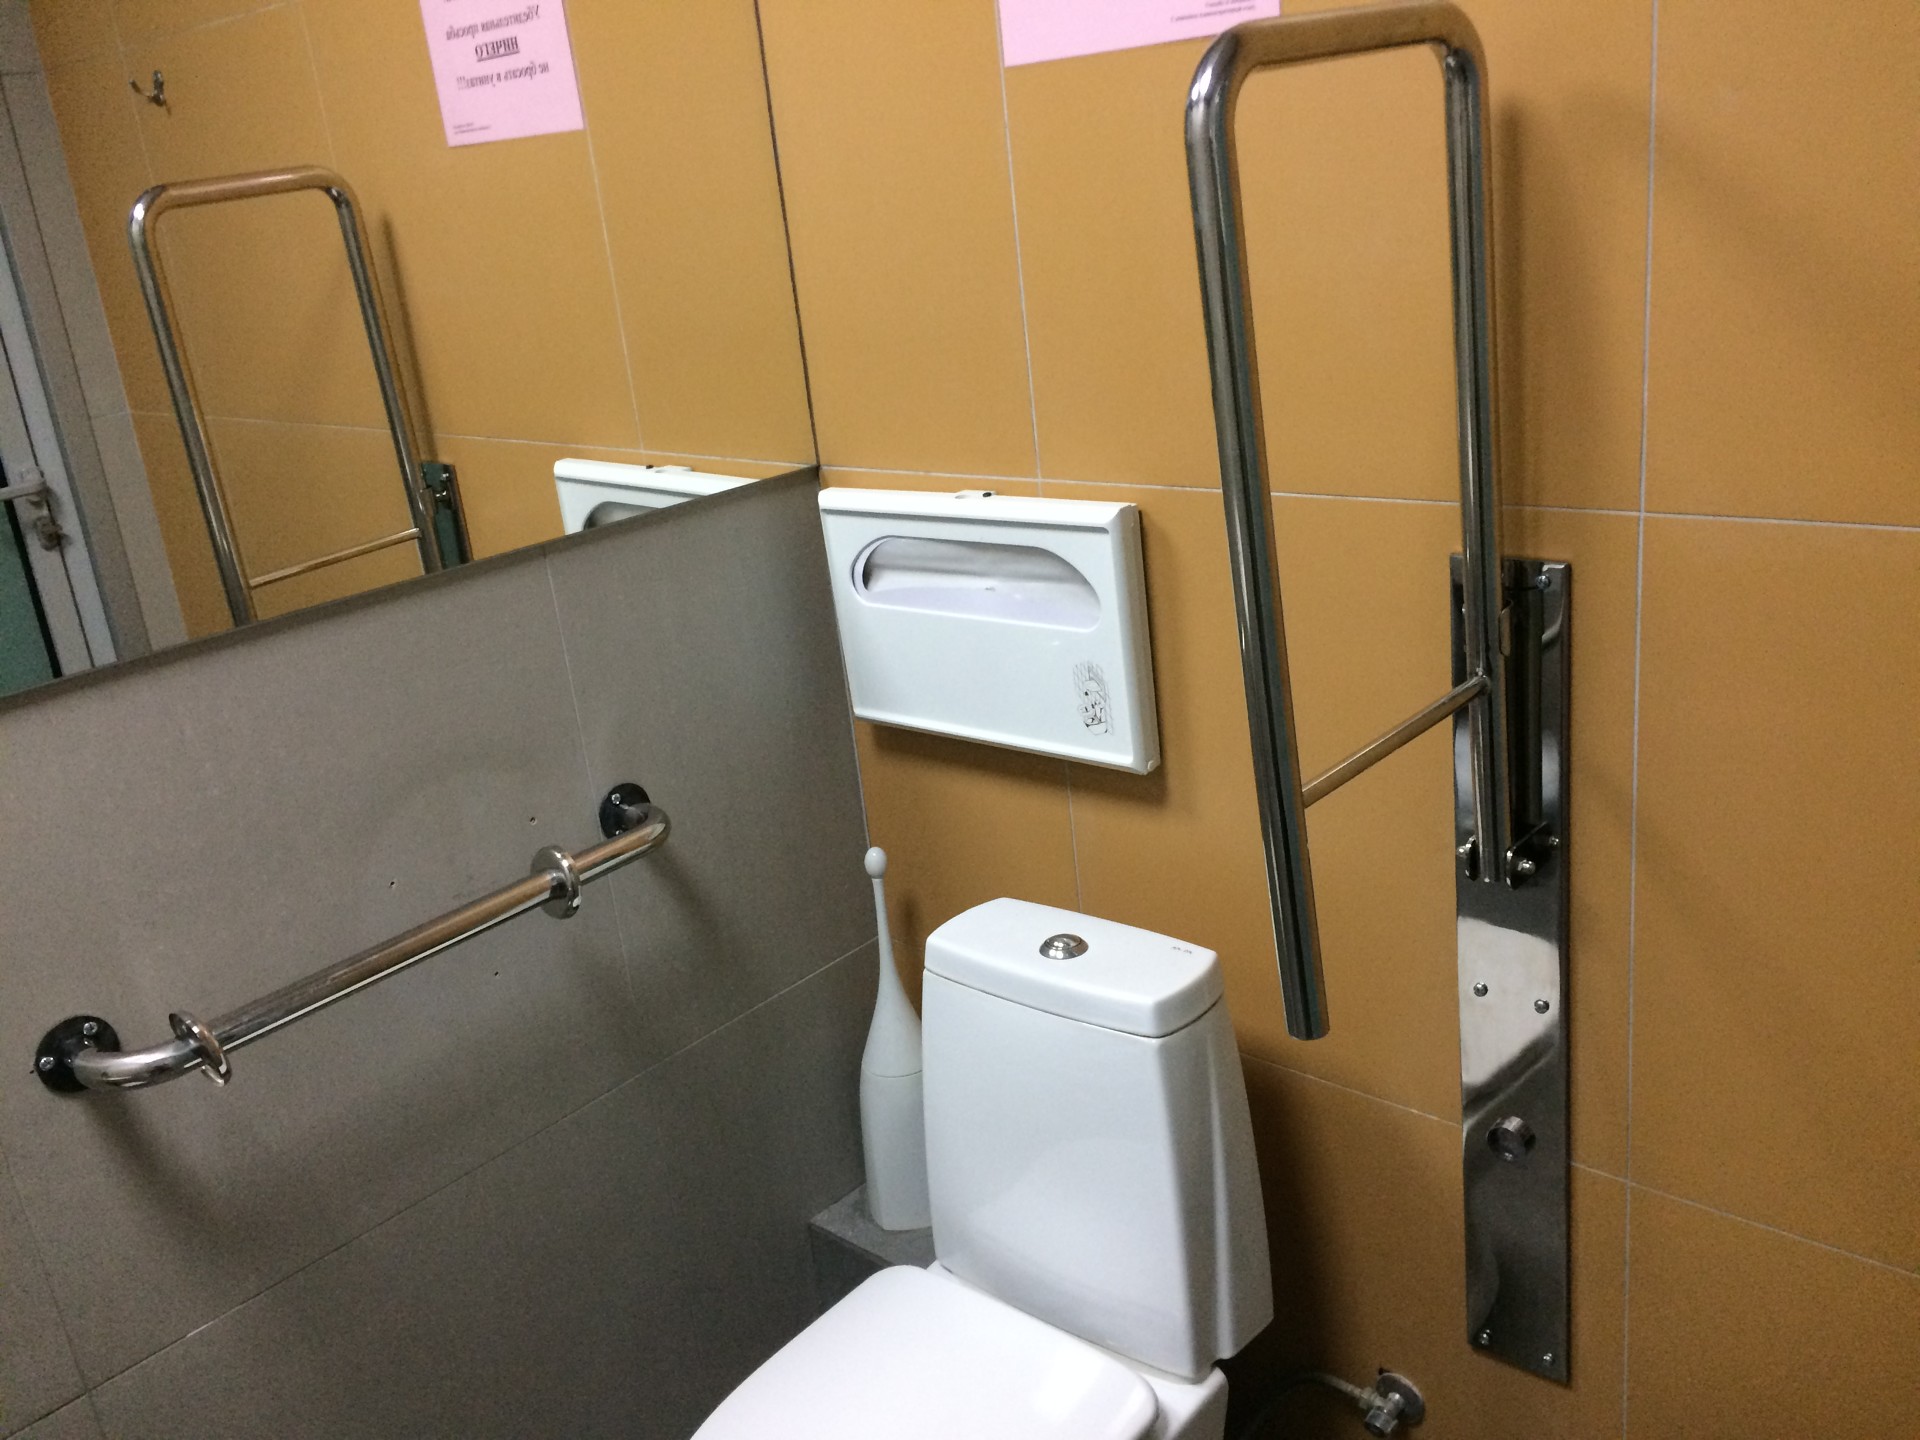 Поручни из нержавеющей стали для инвалидов в туалет для офиса канала 1+1